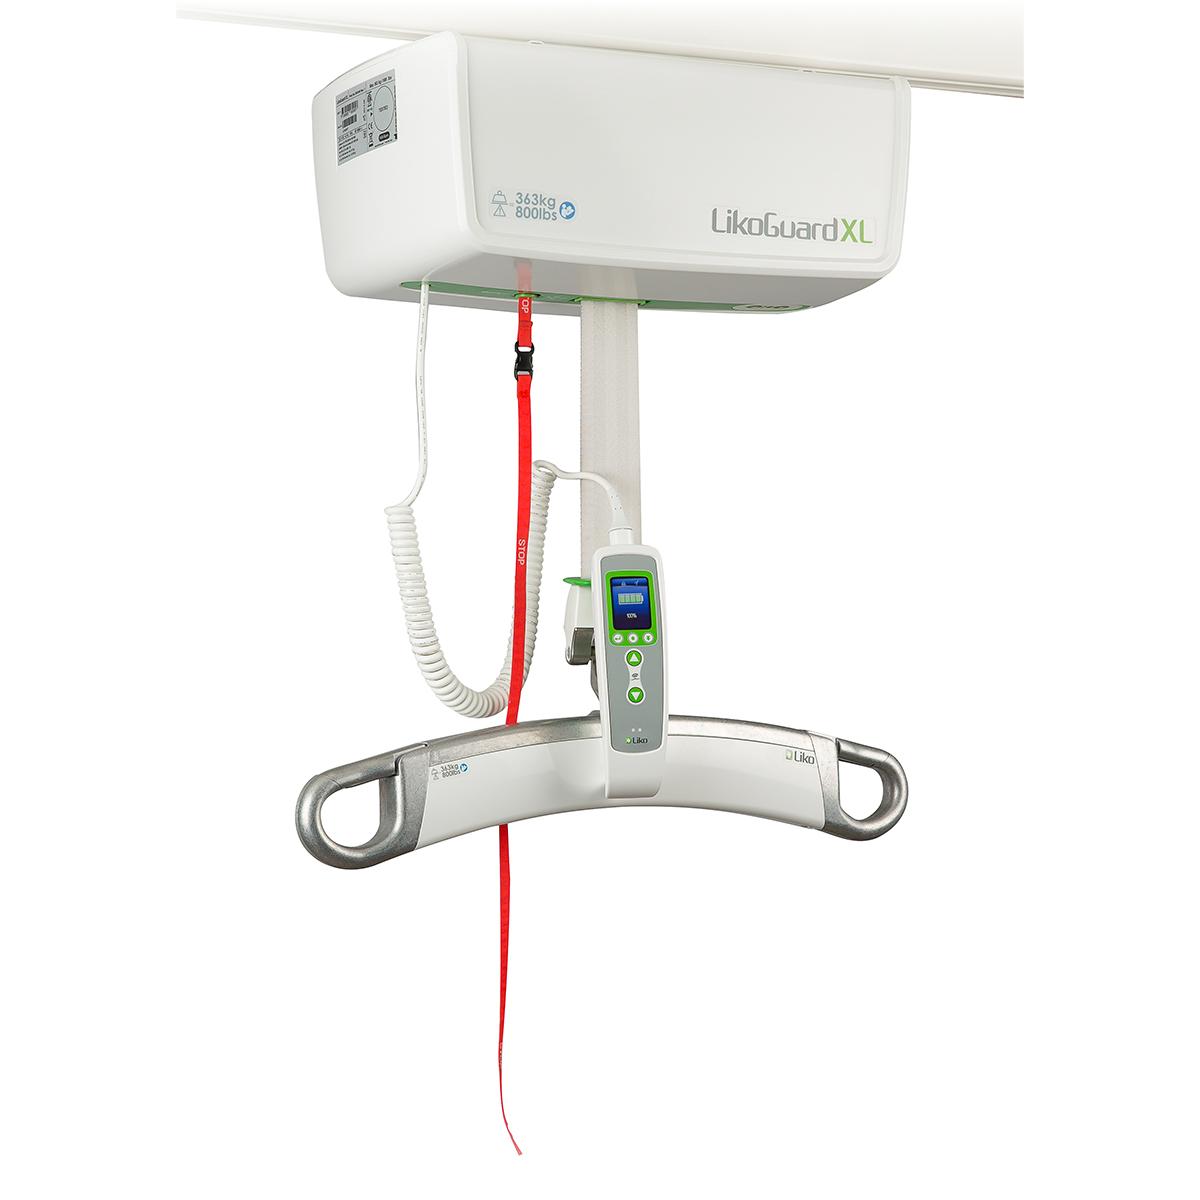 Eine Seitenansicht des schienenbasierten LikoGuard XL Decken-Patientenlifters. Oben links am Gerät befindet sich ein roter Notausschalter.